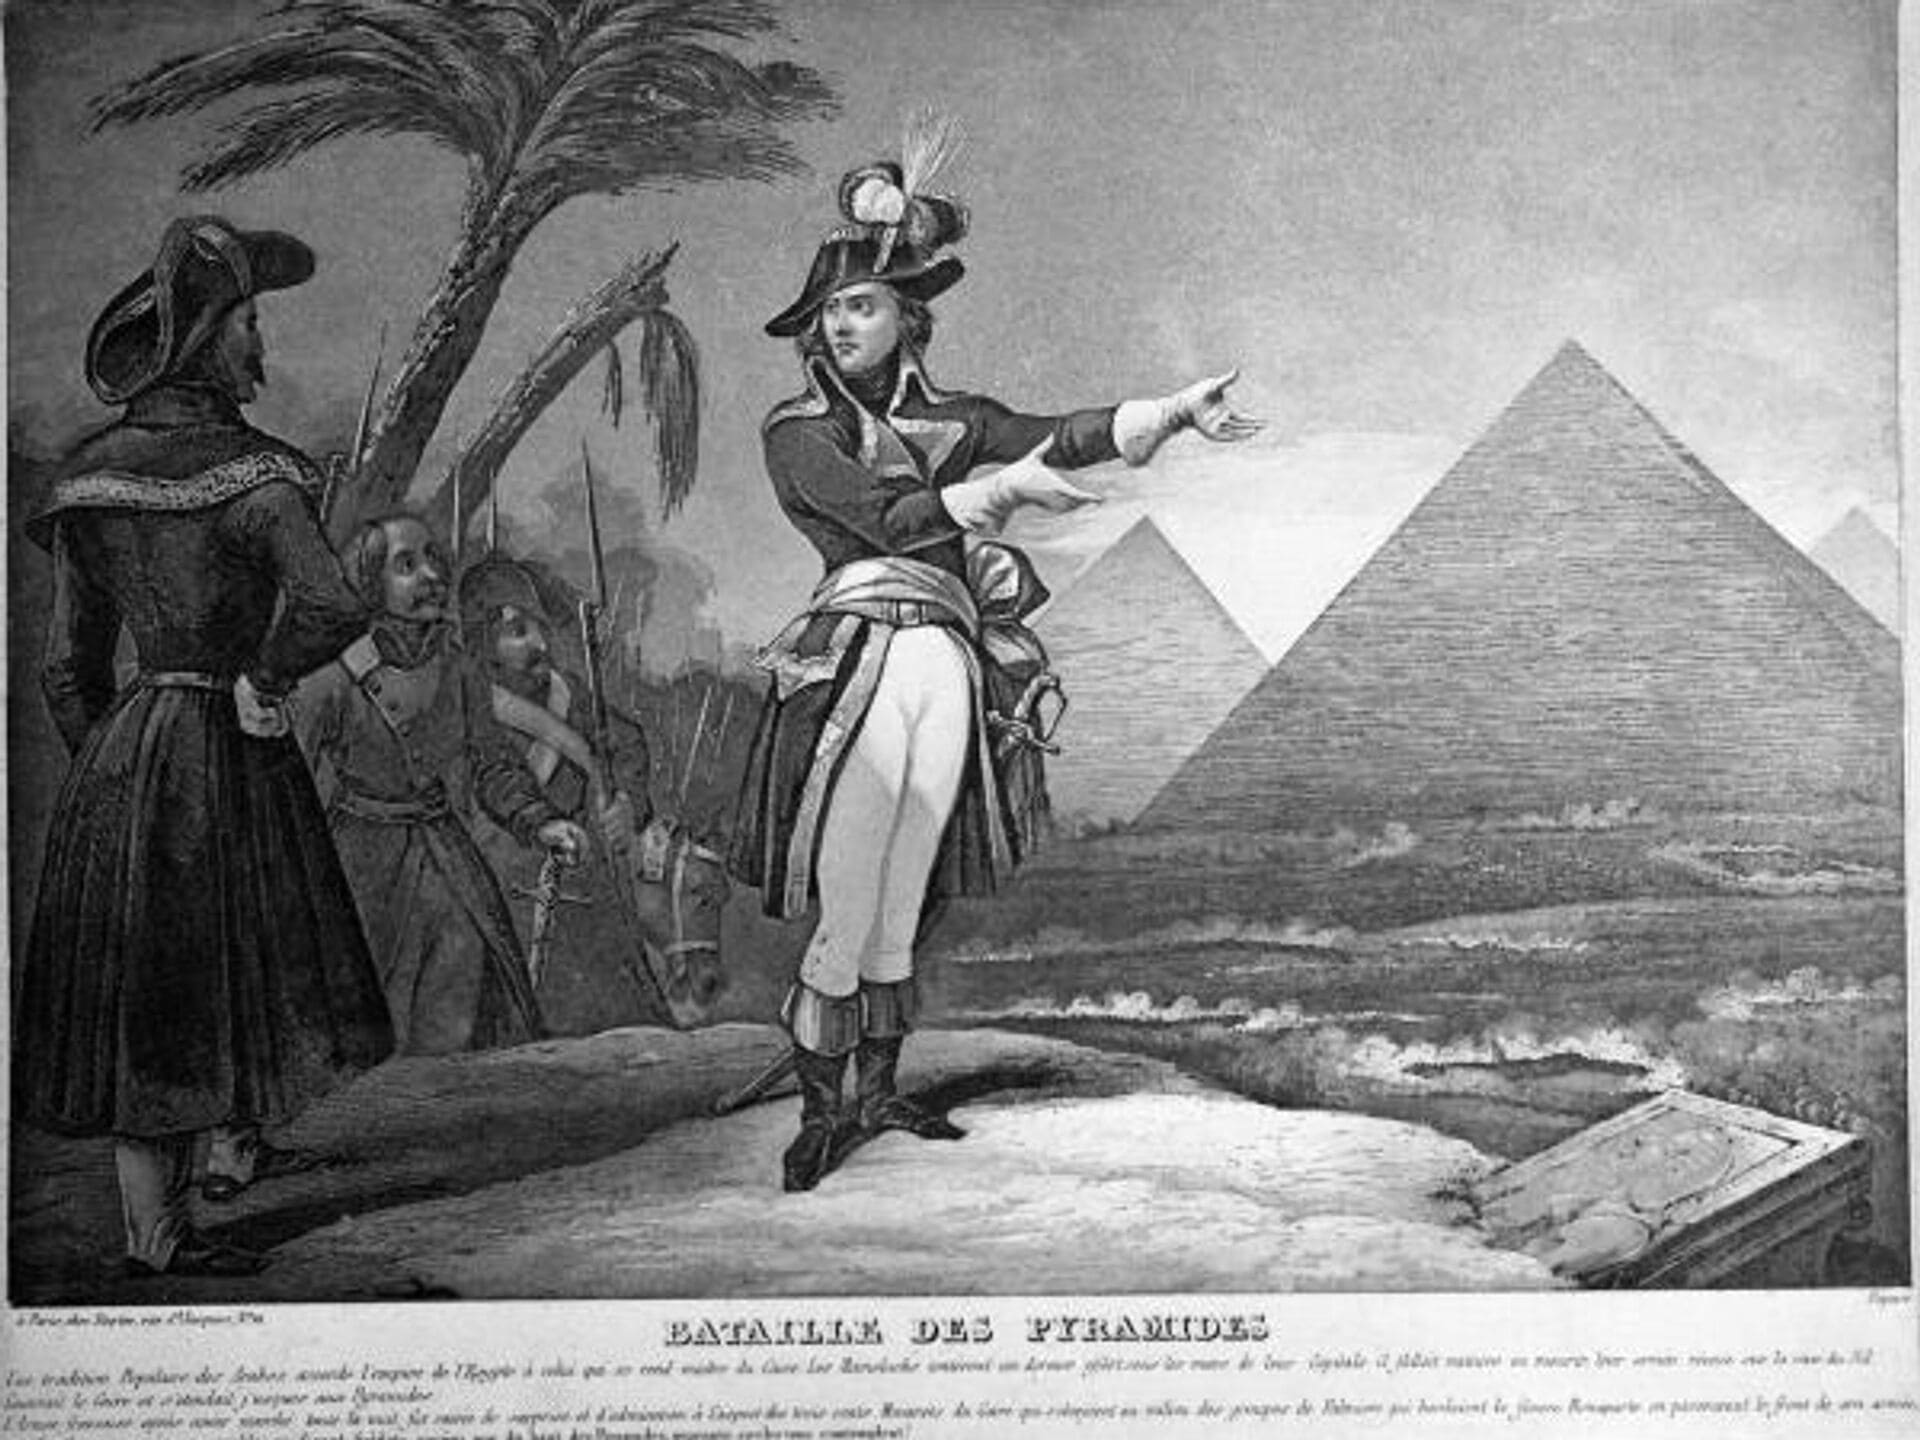 Египетская компания Наполеона породила множество загадок